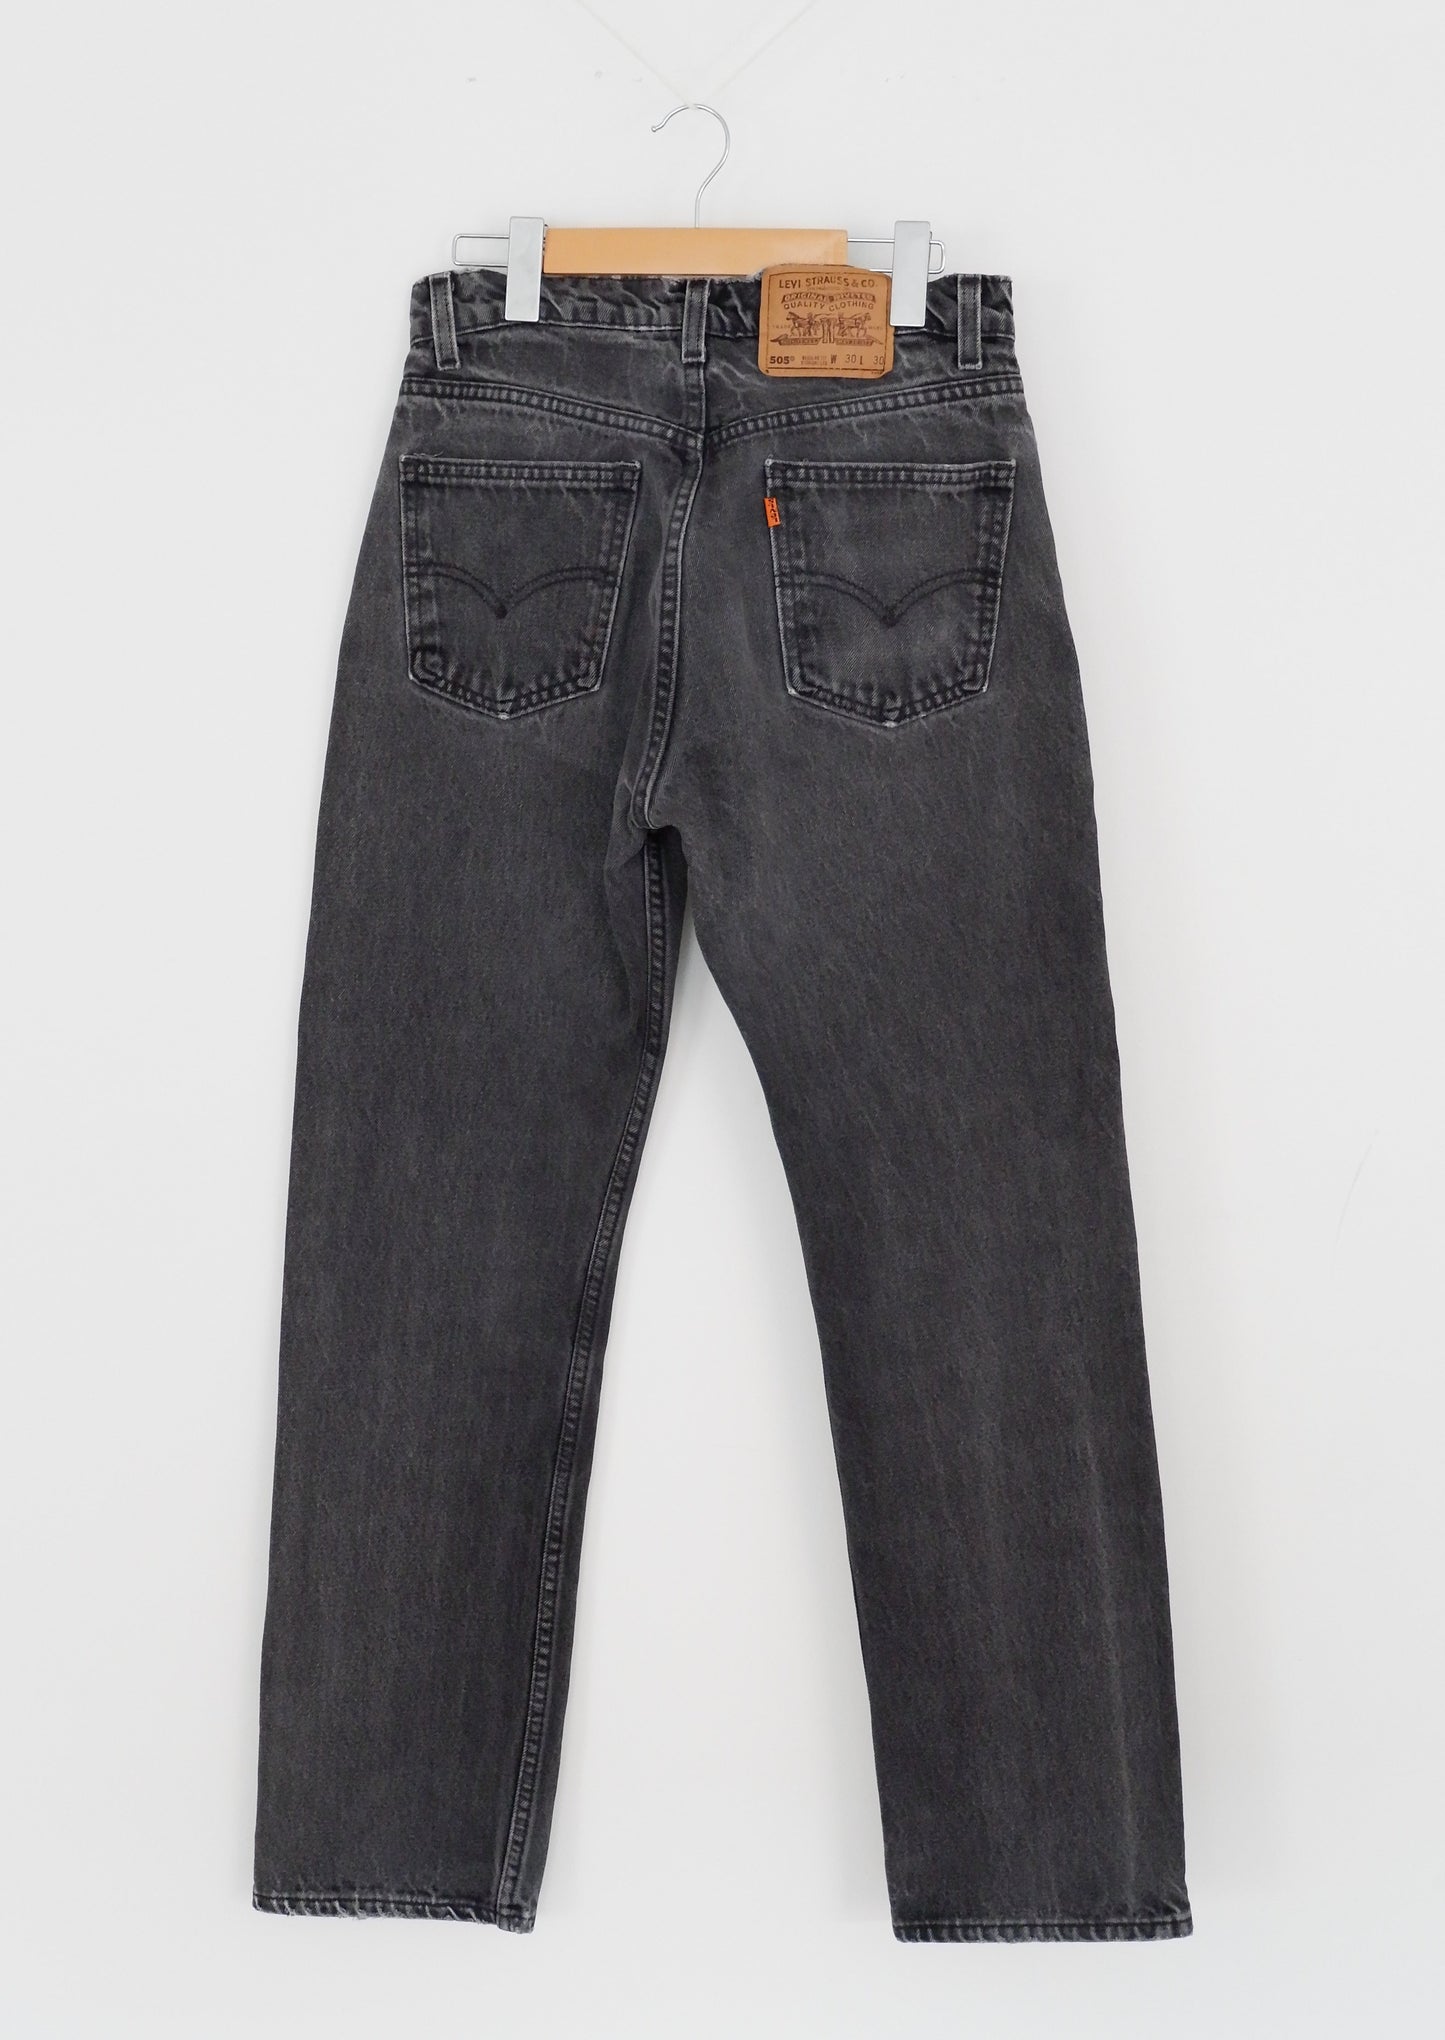 Levis Vintage 505 Black Jeans - 29